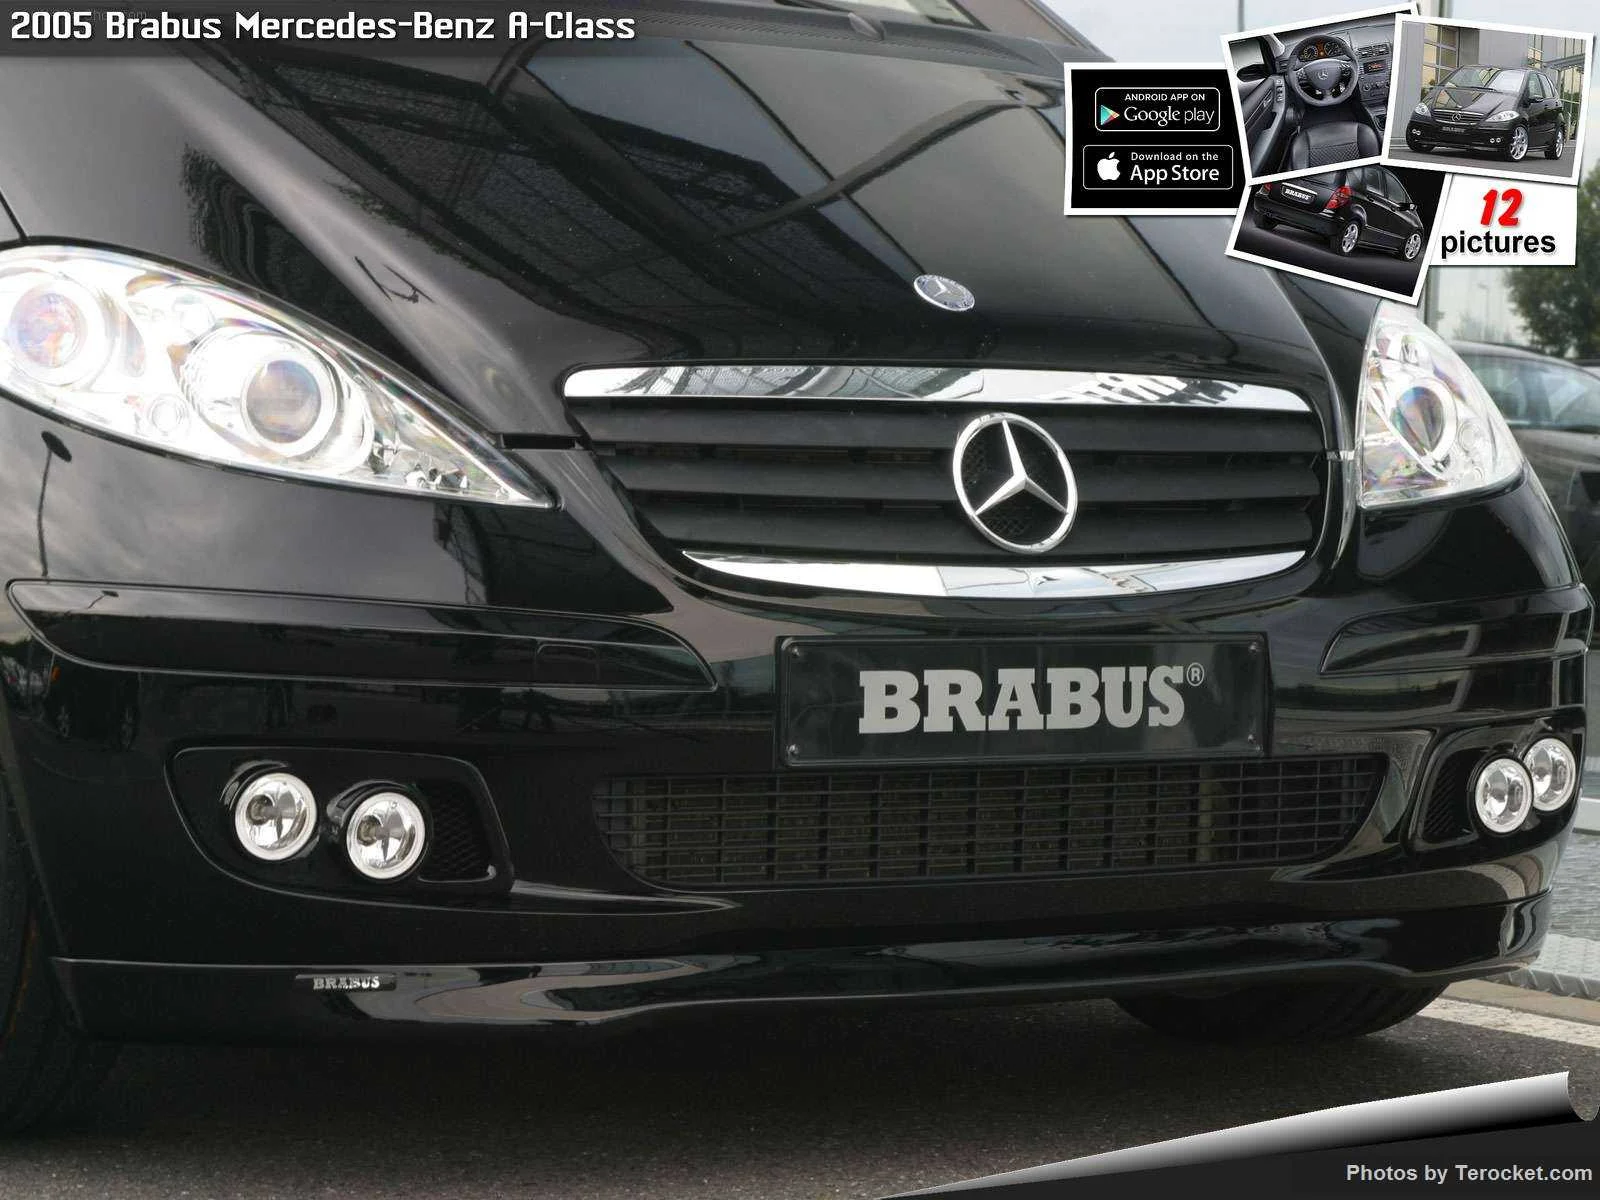 Hình ảnh xe ô tô Brabus Mercedes-Benz A-Class 2005 & nội ngoại thất